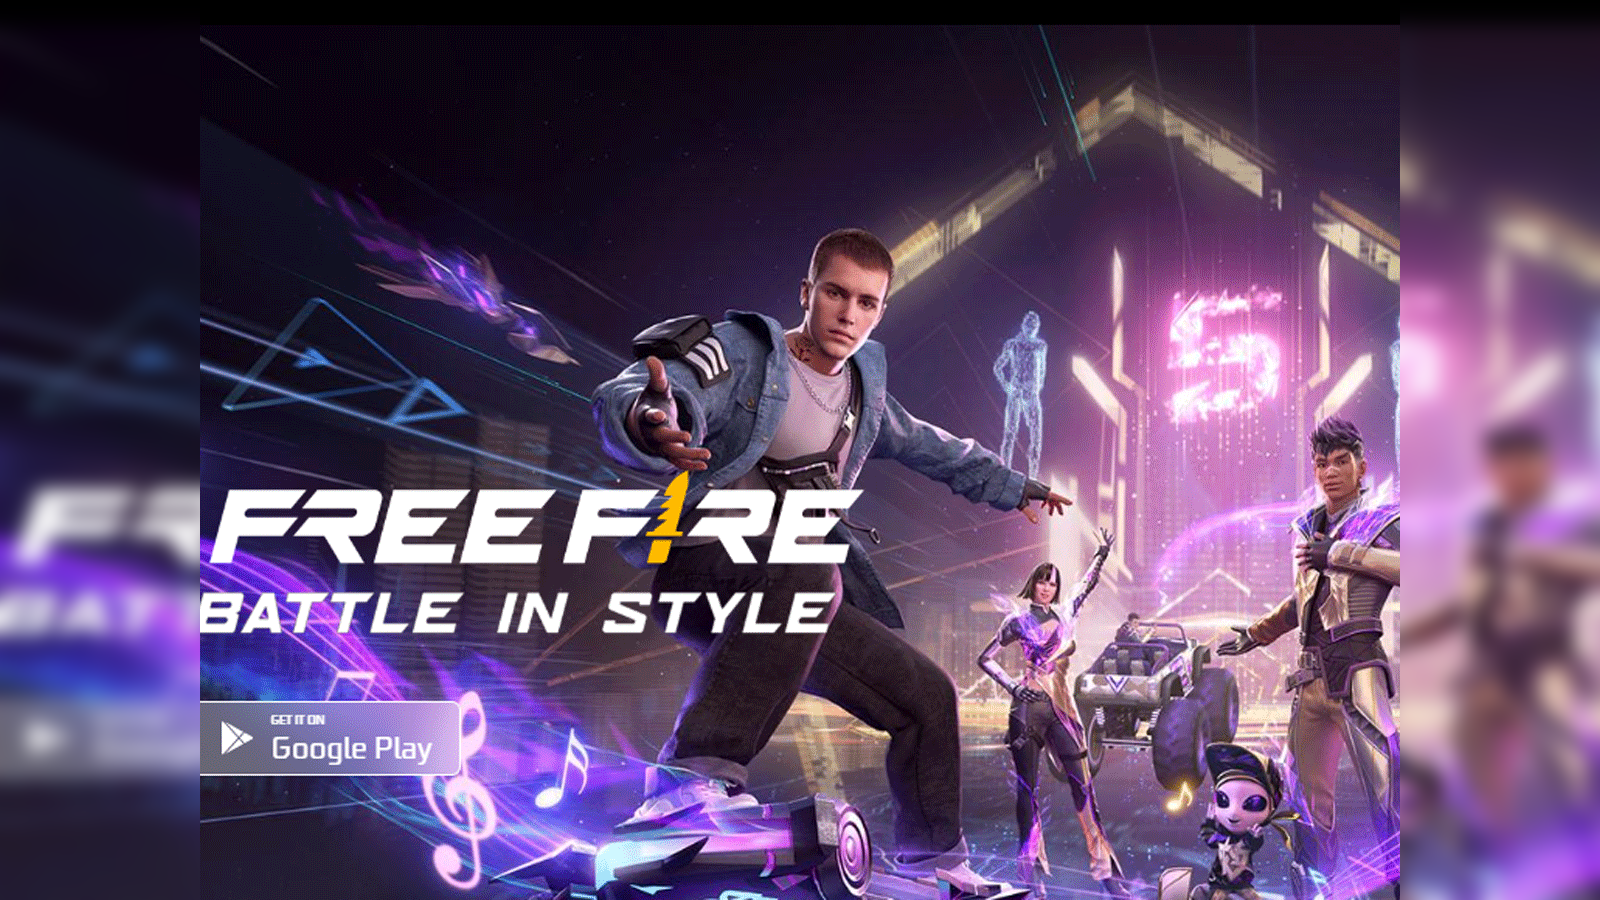 Free fire online